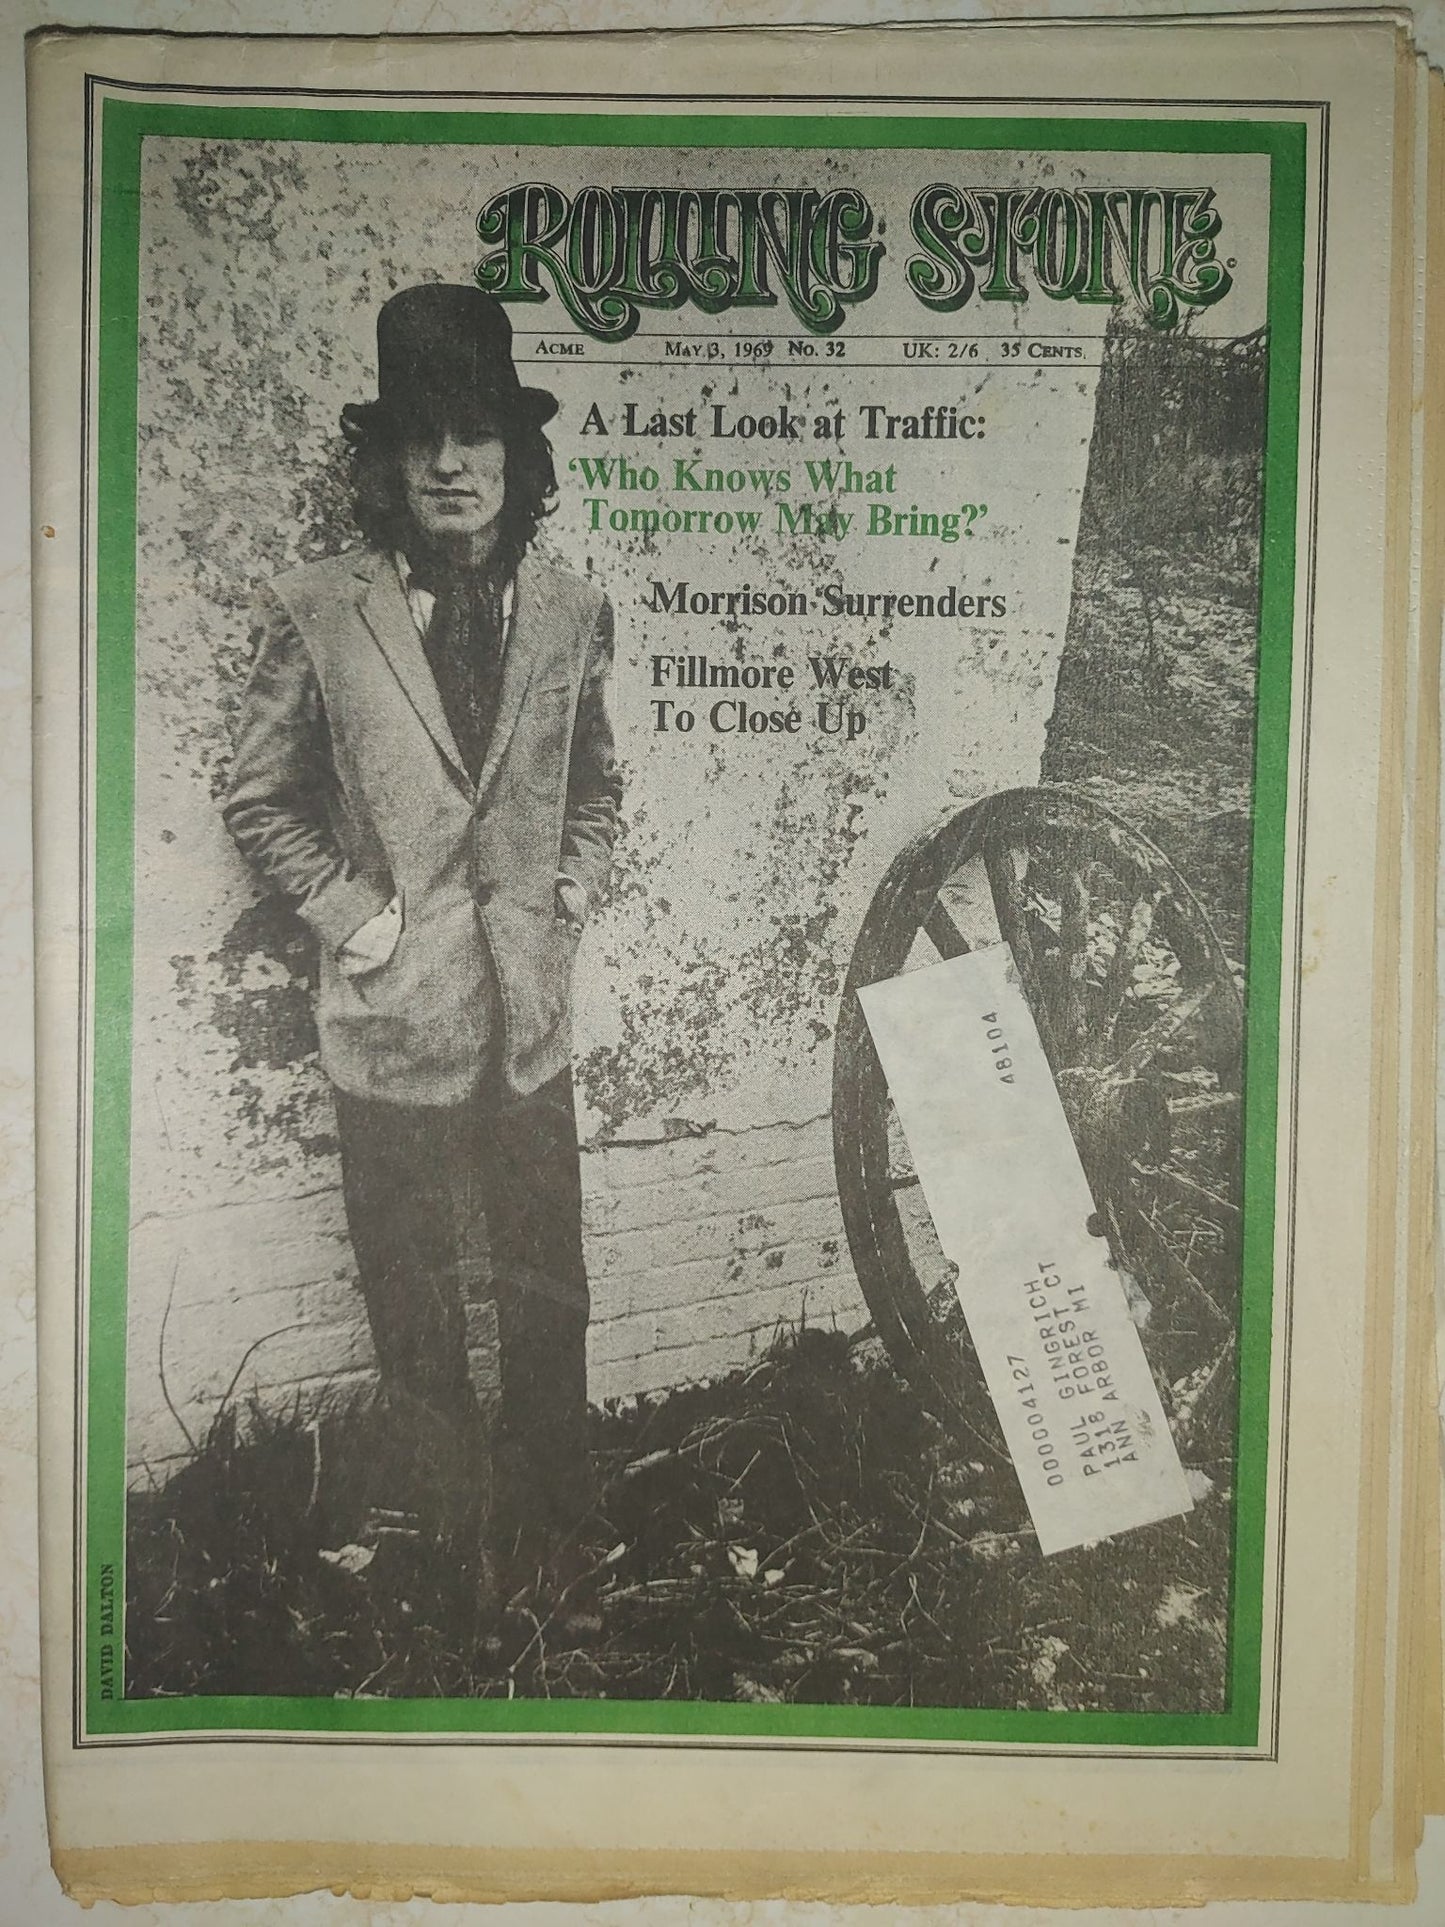 Rolling Stone Magazine May 13, 1969 Issue # 32 Steve Winwood